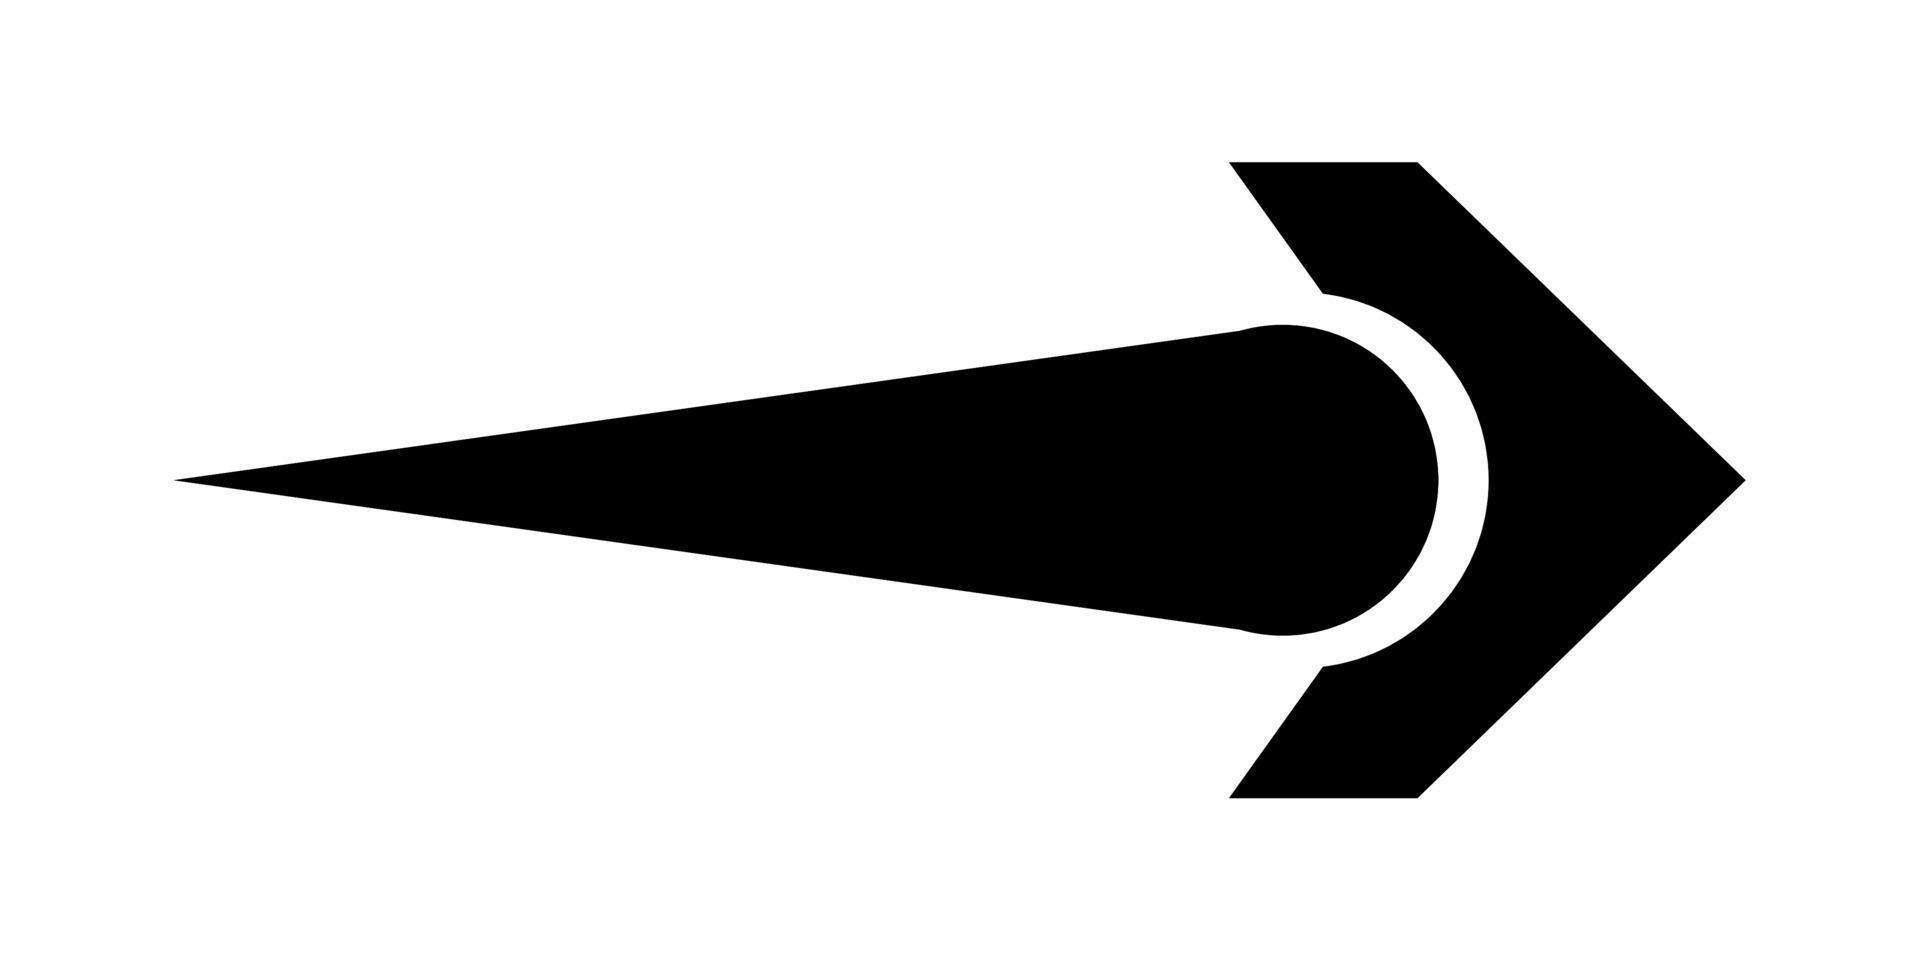 Illustration Vector Graphic of Black Arrow Cion